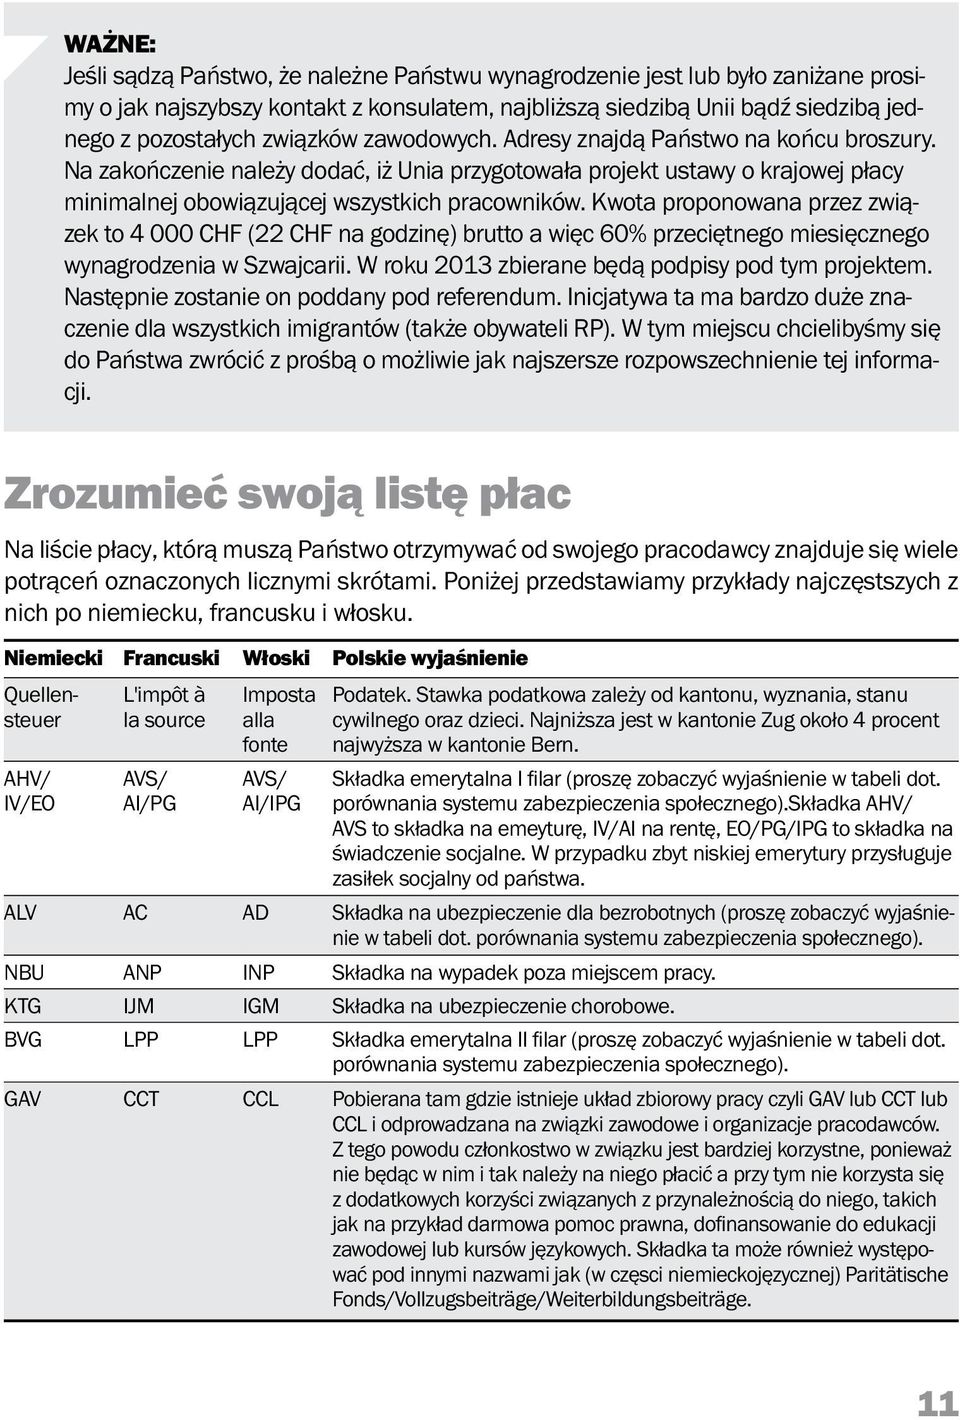 Kwota proponowana przez związek to 4 000 CHF (22 CHF na godzinę) brutto a więc 60% przeciętnego miesięcznego wynagrodzenia w Szwajcarii. W roku 2013 zbierane będą podpisy pod tym projektem.